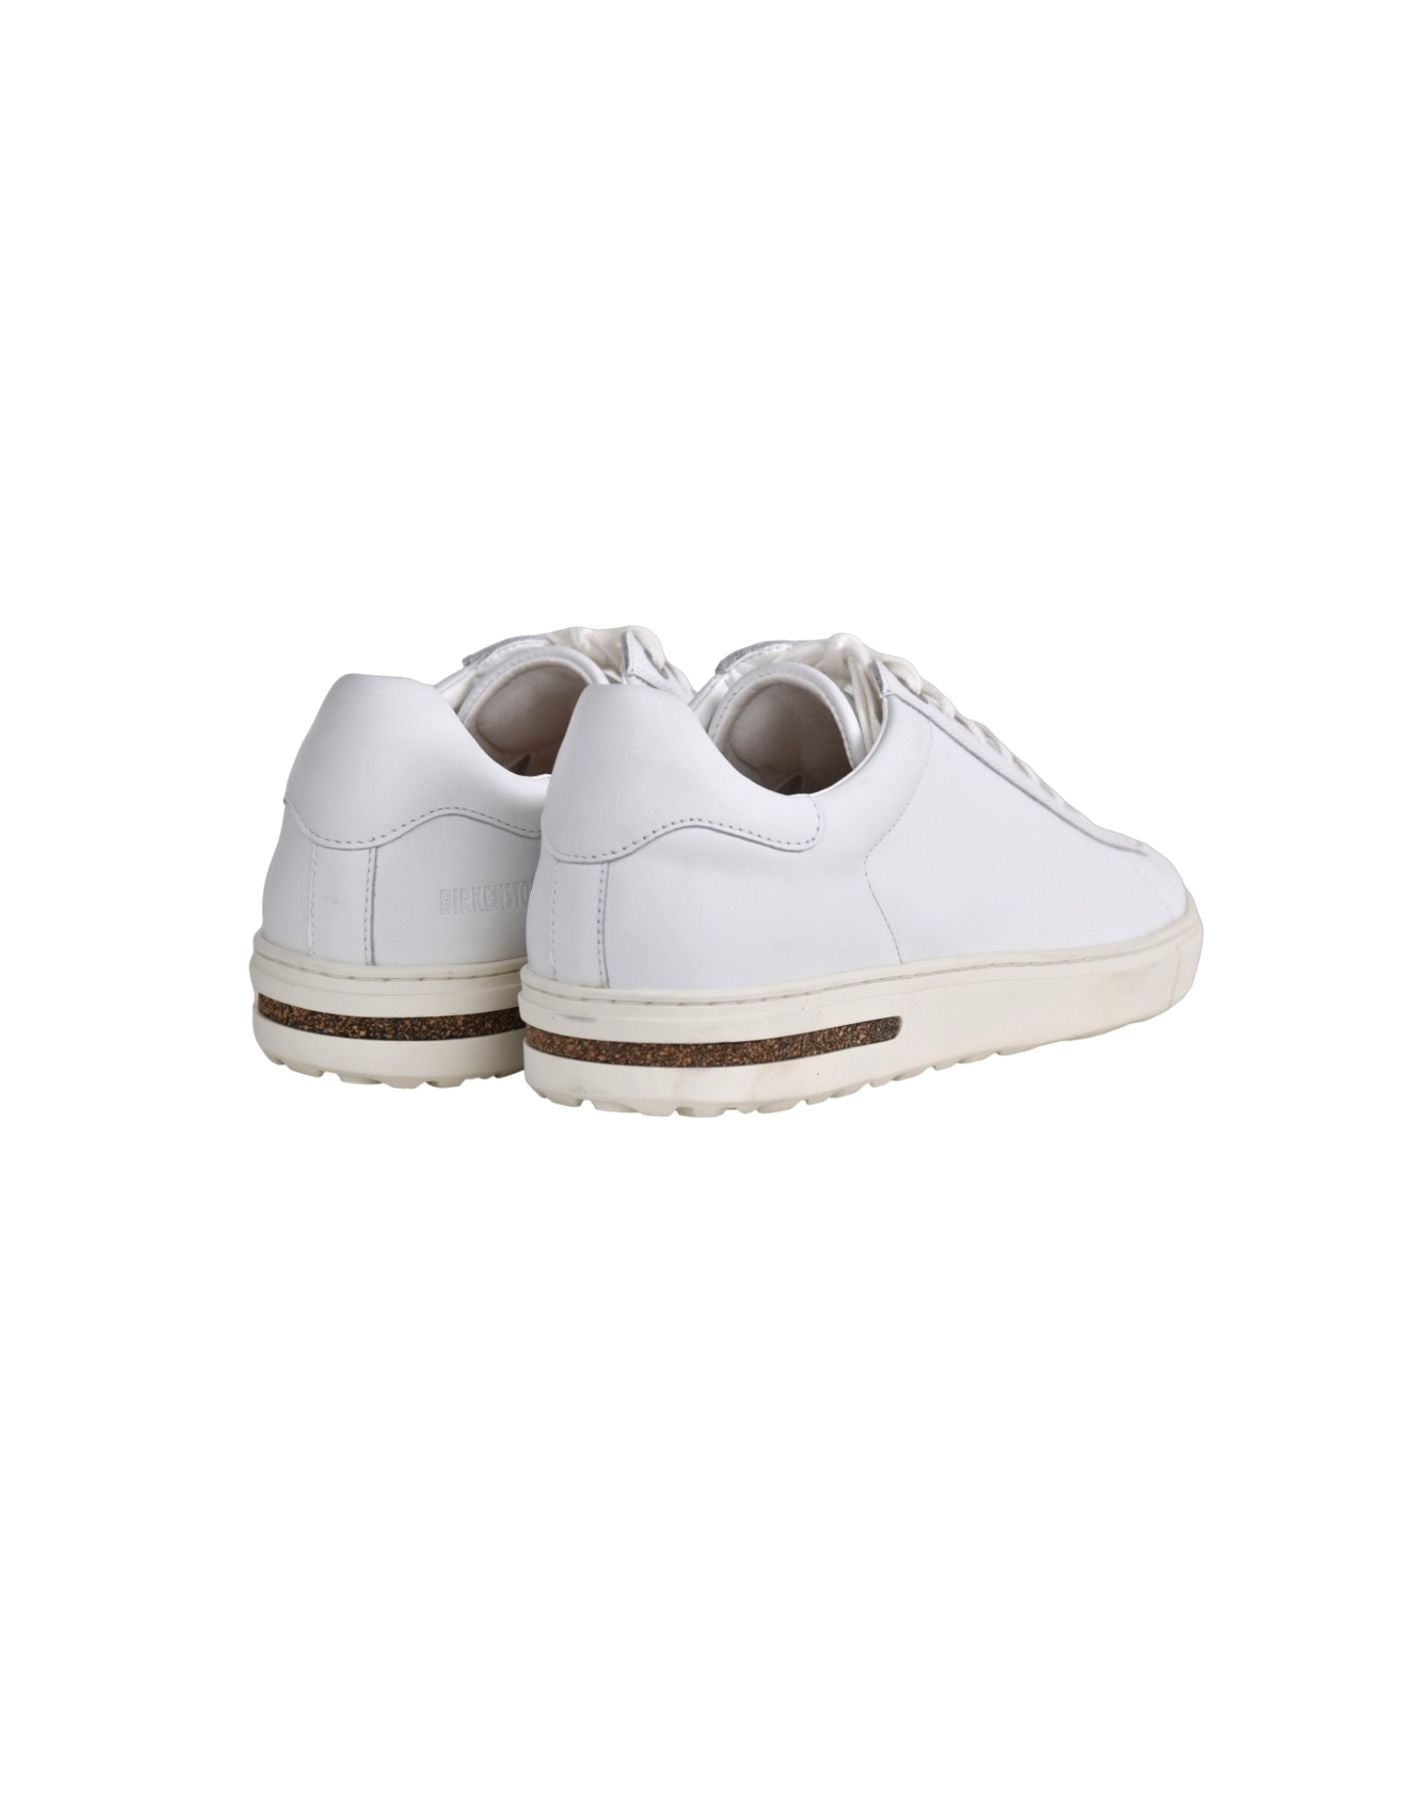 Chaussures femme 1017724 Birkenstock blanc